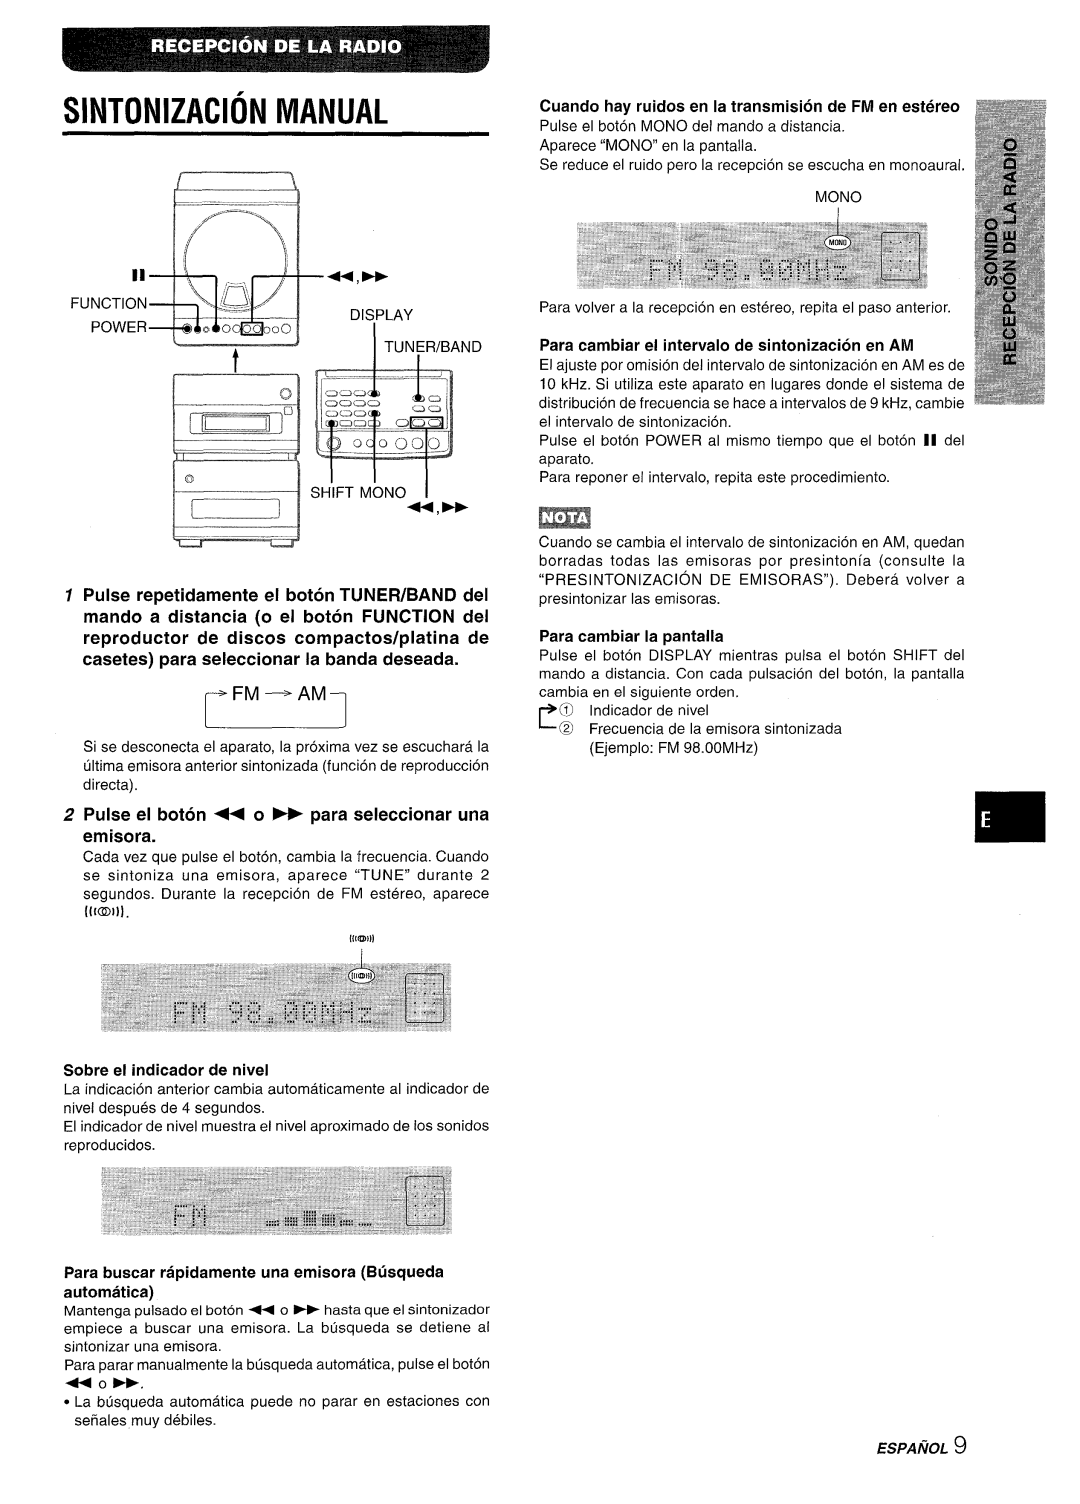 Aiwa XR-M88 Sintonizacion Manual, Pulse el boton ++ o * para seleccionar una emisora, Para cambiar la pantaila, automatic 